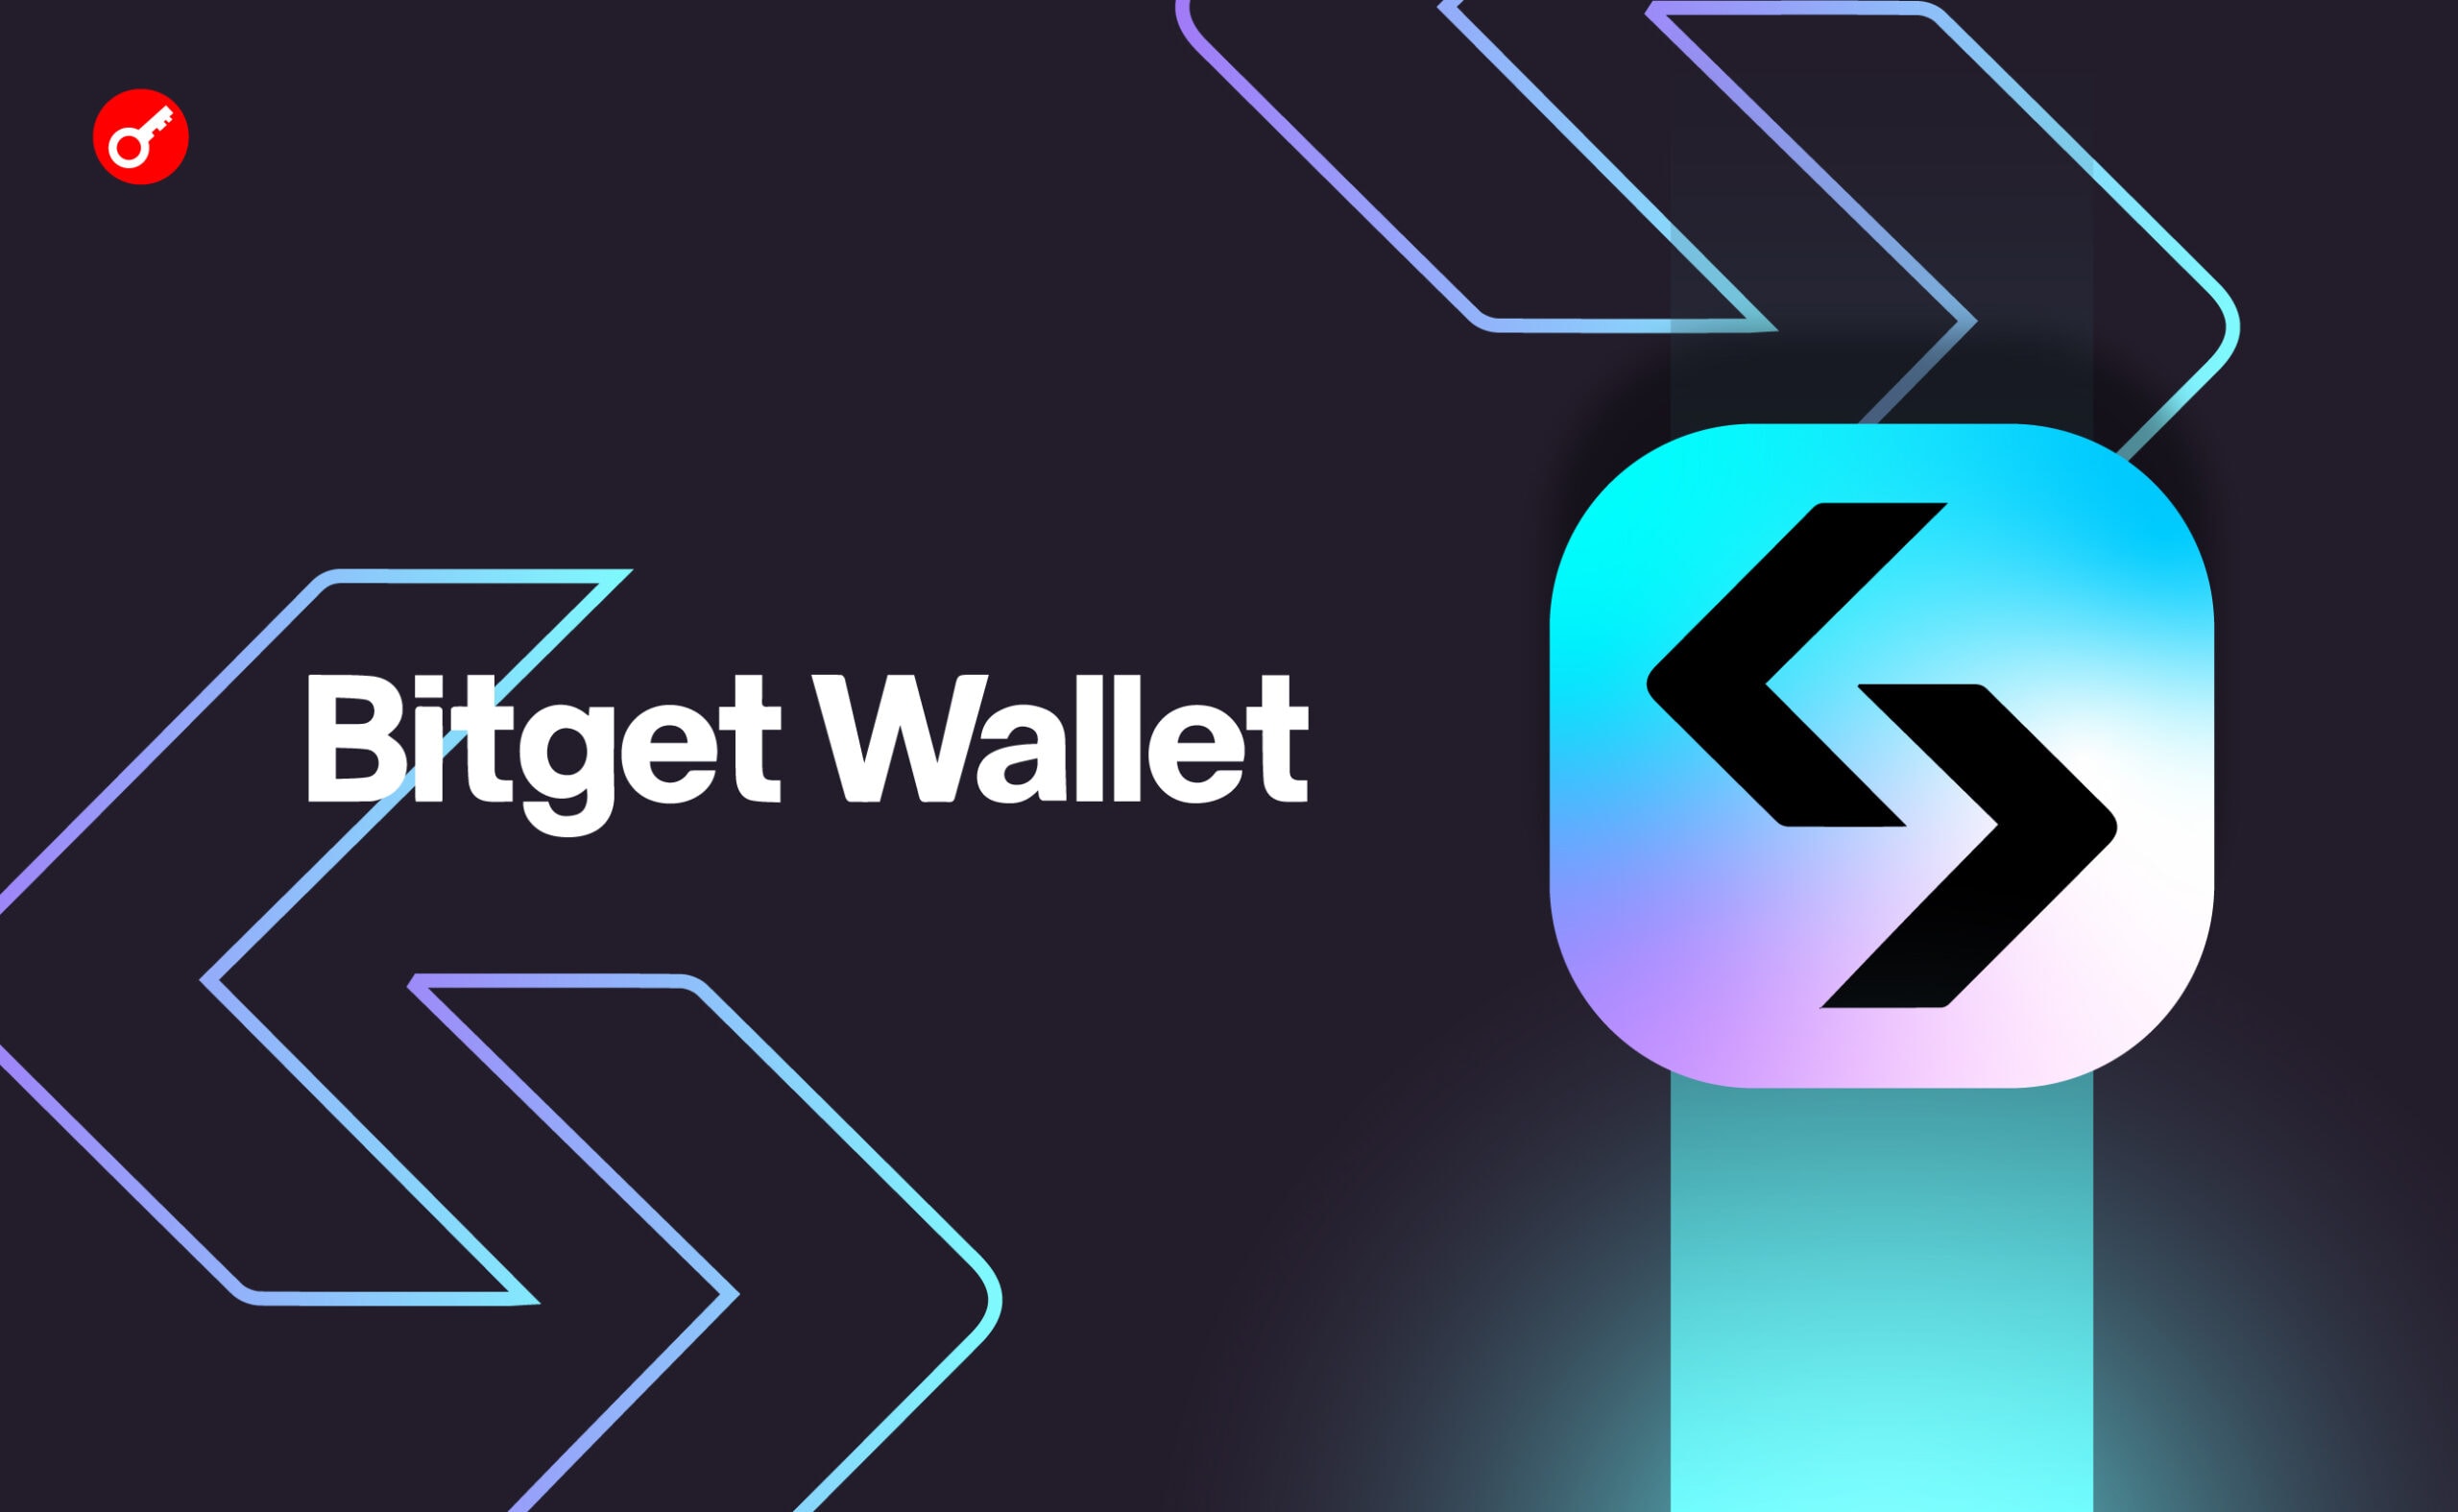 Bitget Wallet представил план поддержки экосистемы биткоина. Заглавный коллаж новости.